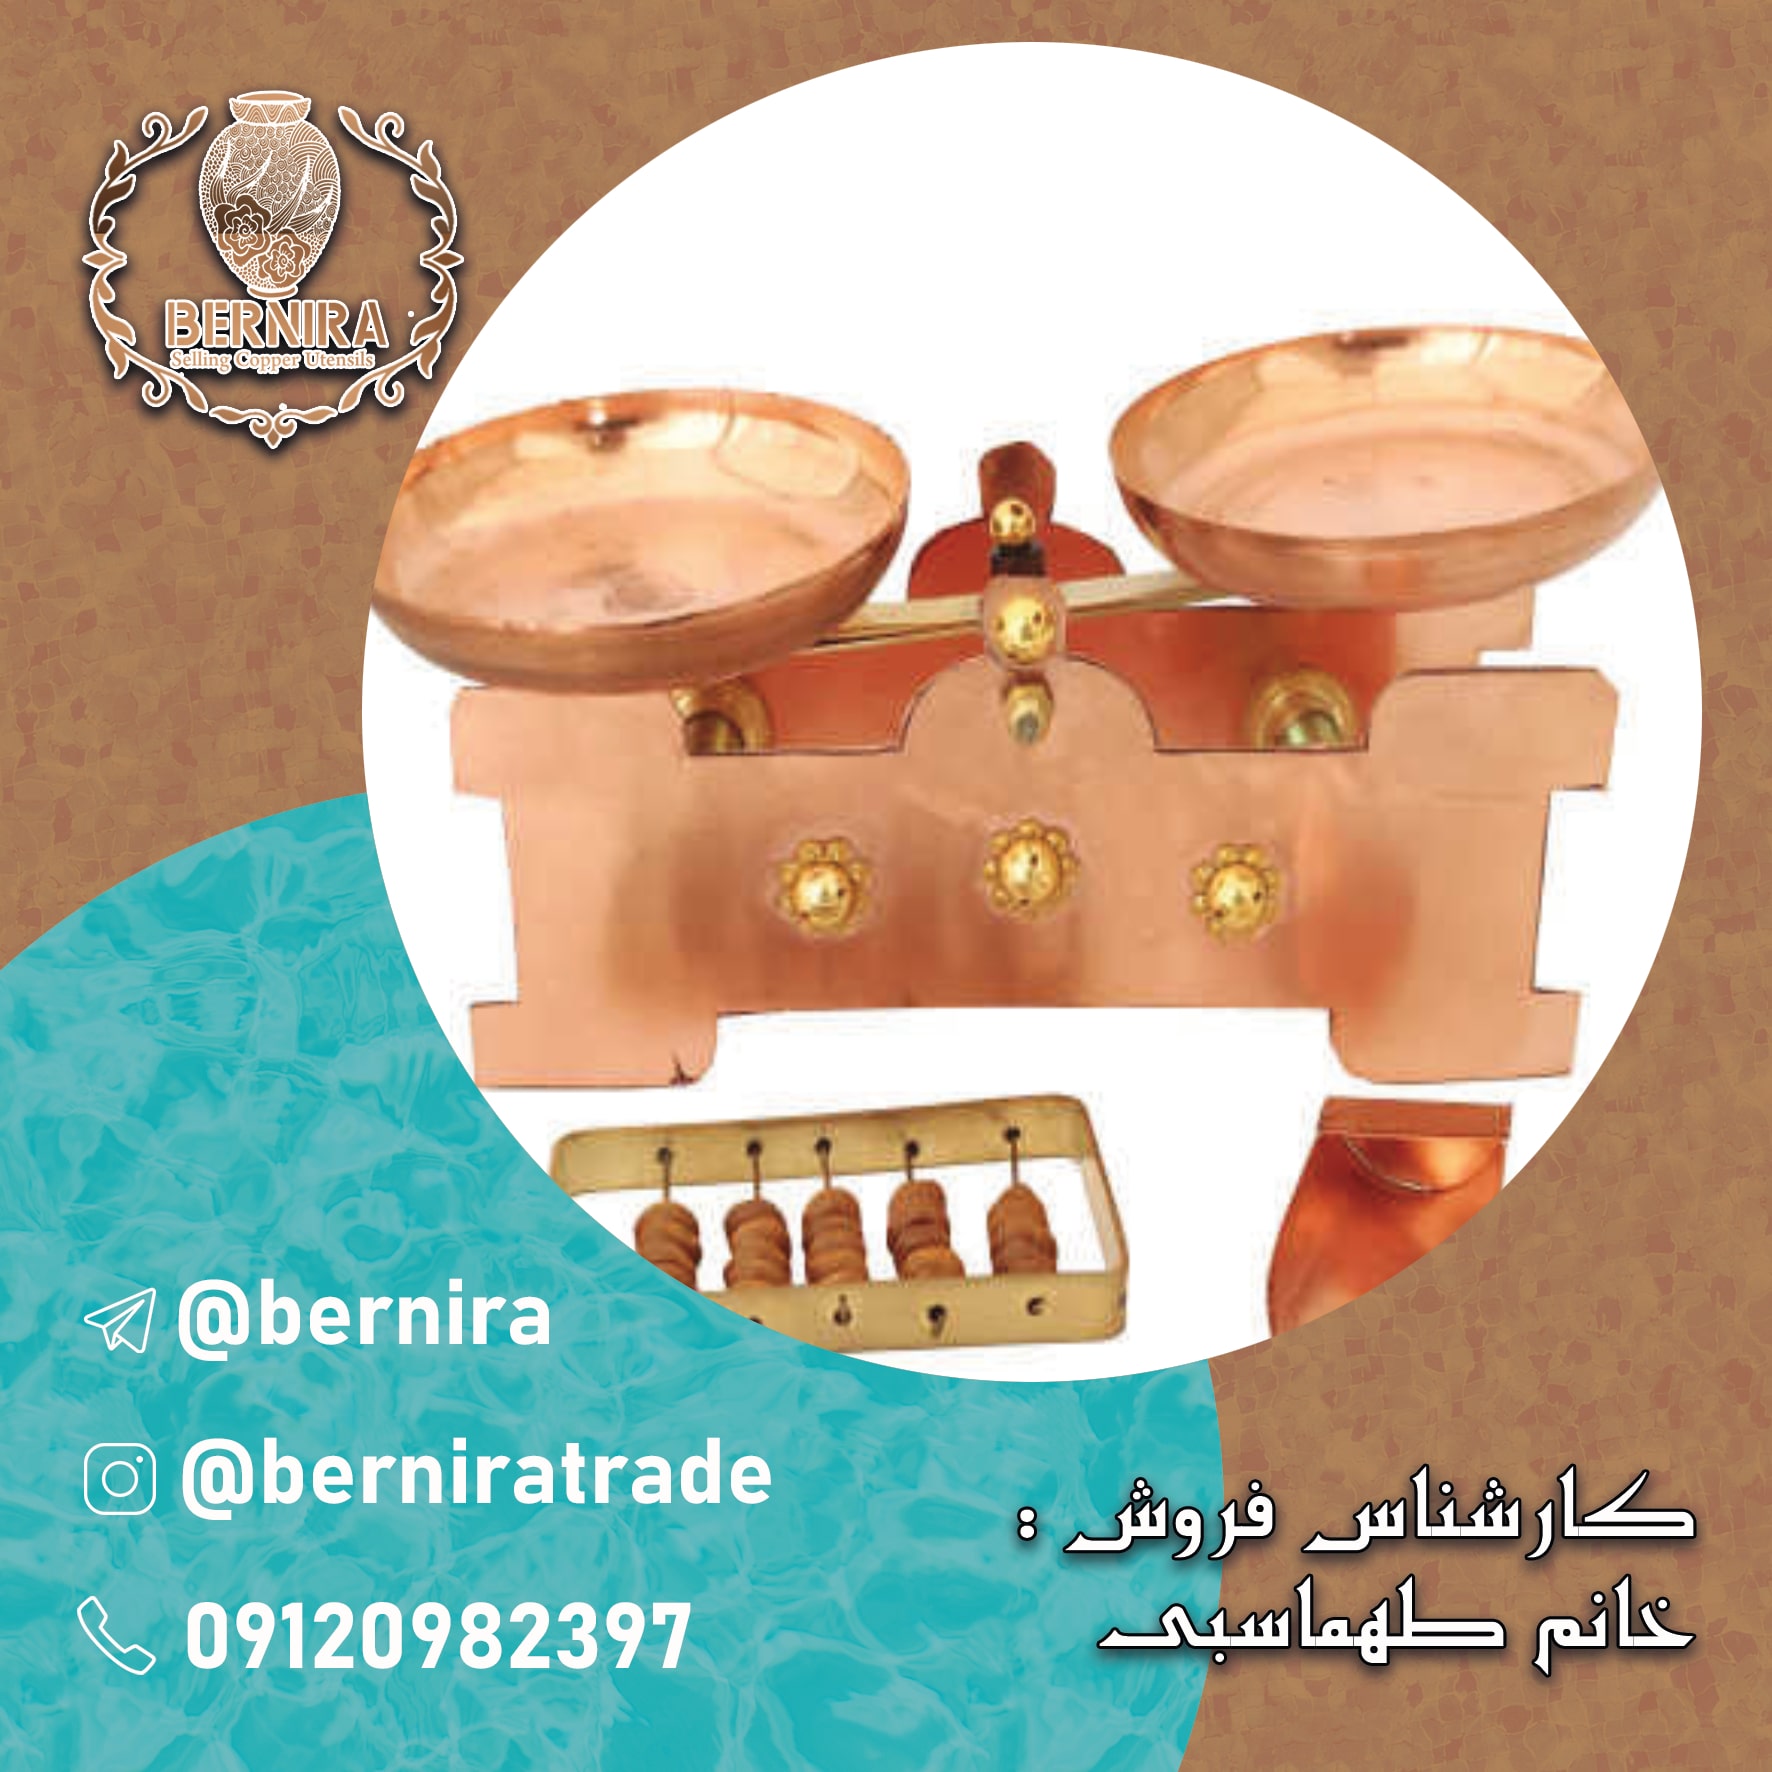 قیمت ظروف مسی اصفهان